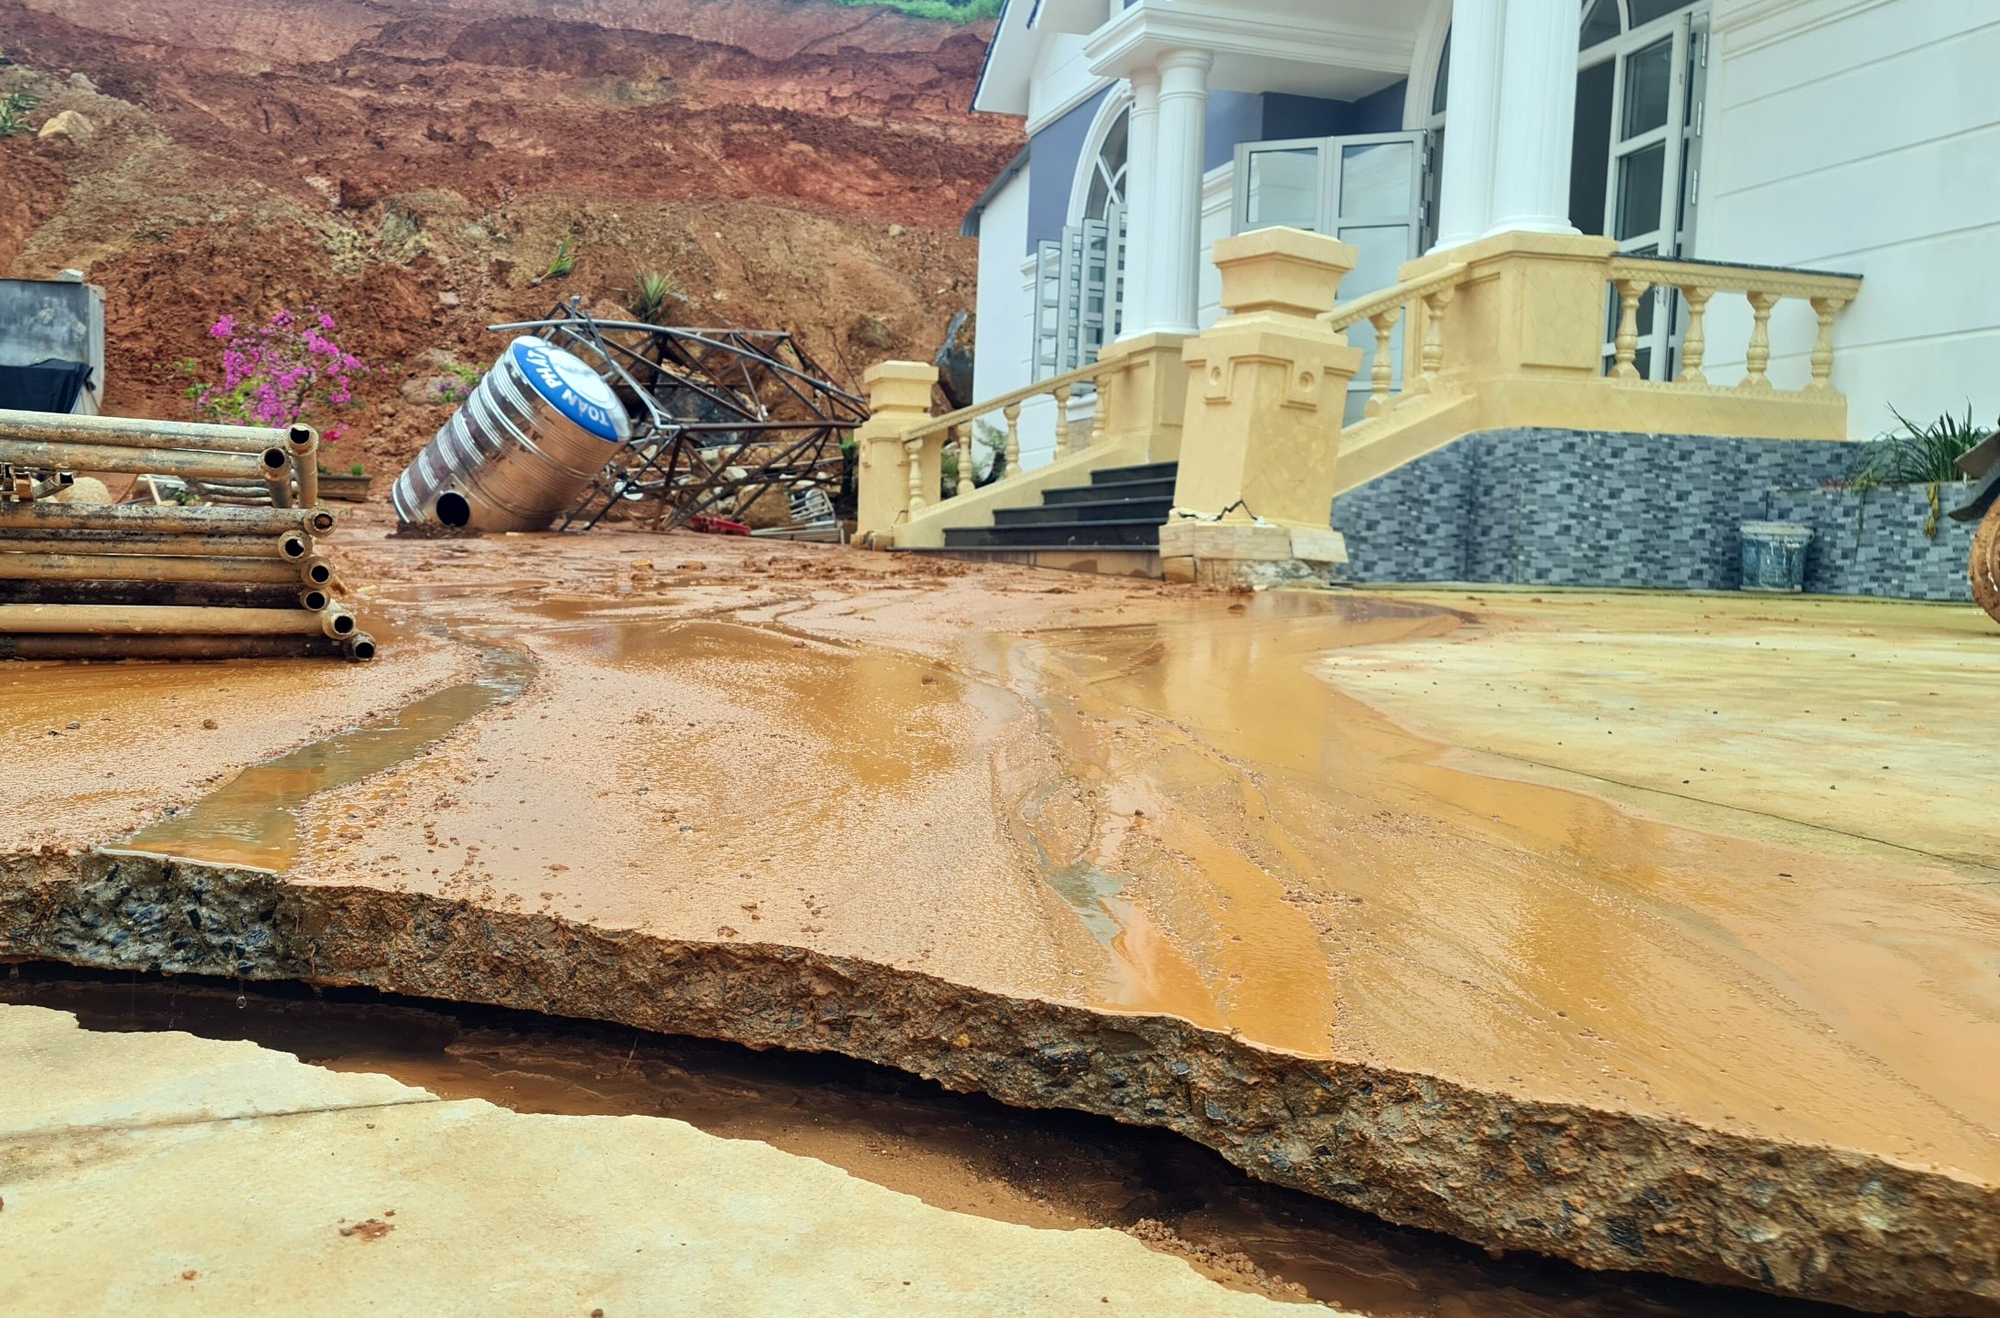 Lâm Đồng: Nhiều vết nứt vừa xuất hiện tại dự án hồ chứa nước 500 tỉ đồng - Ảnh 4.